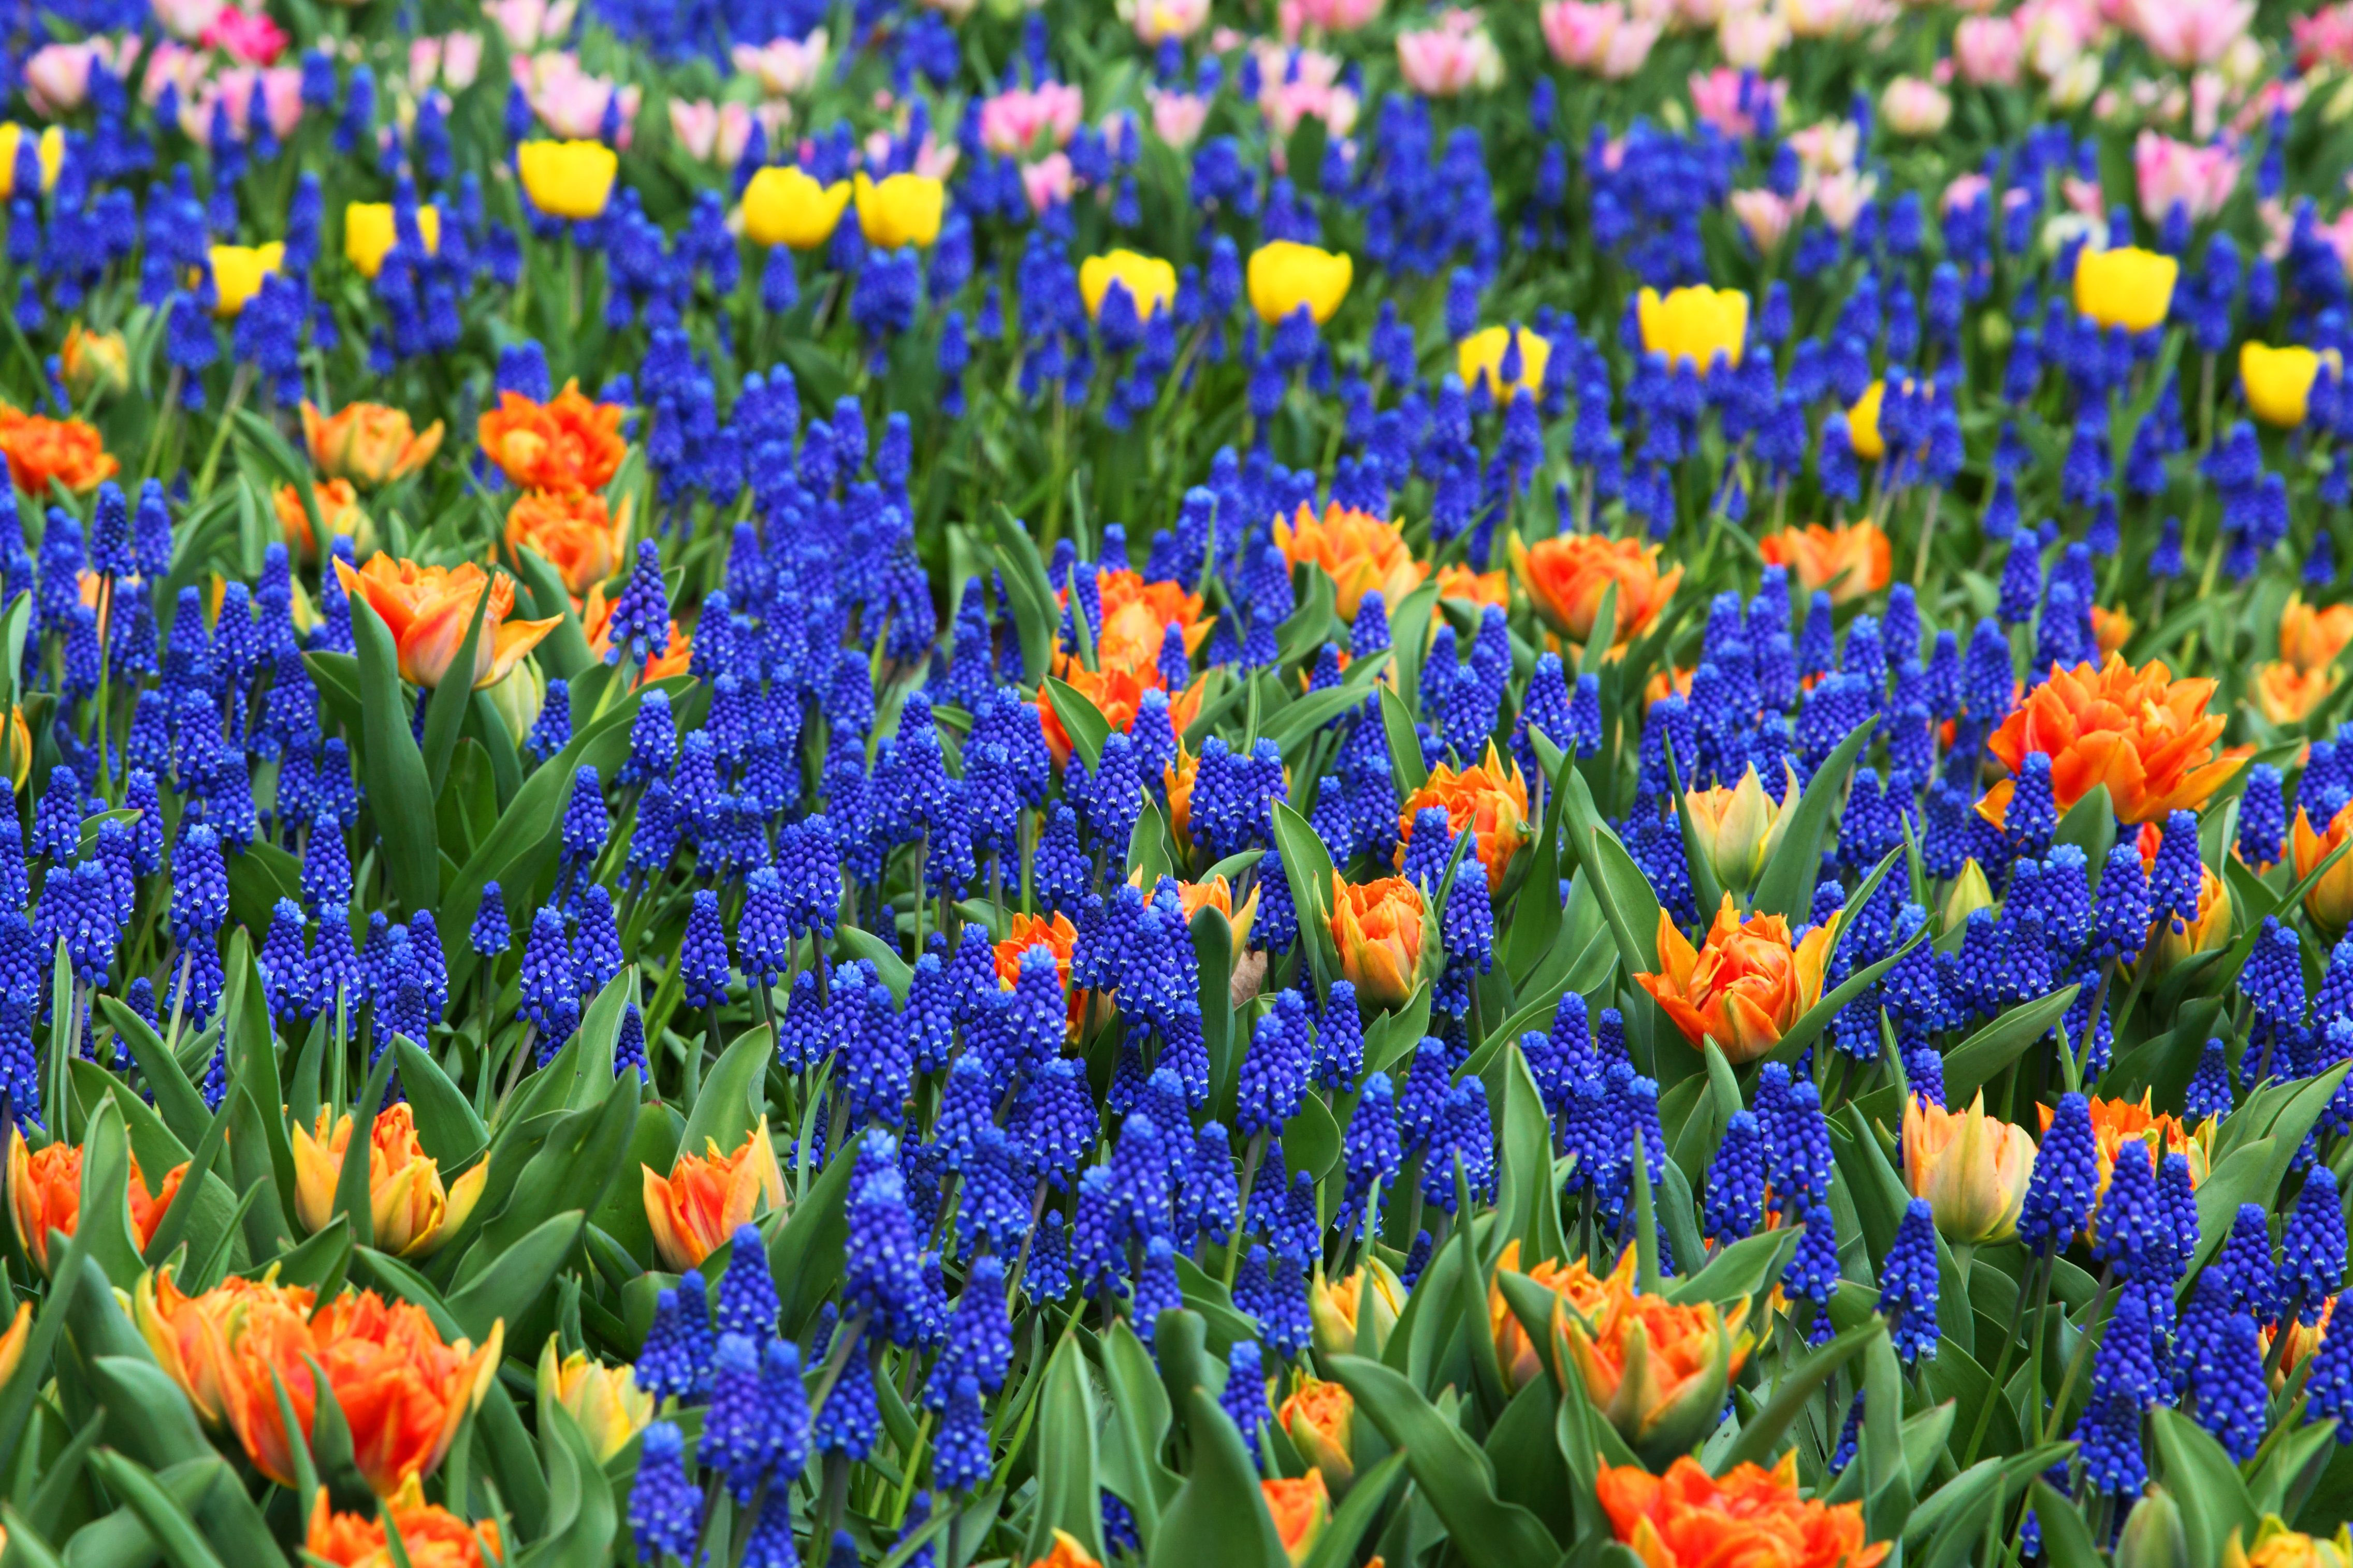 Background of blue, orange, and yellow flowers image - Free stock photo -  Public Domain photo - CC0 Images